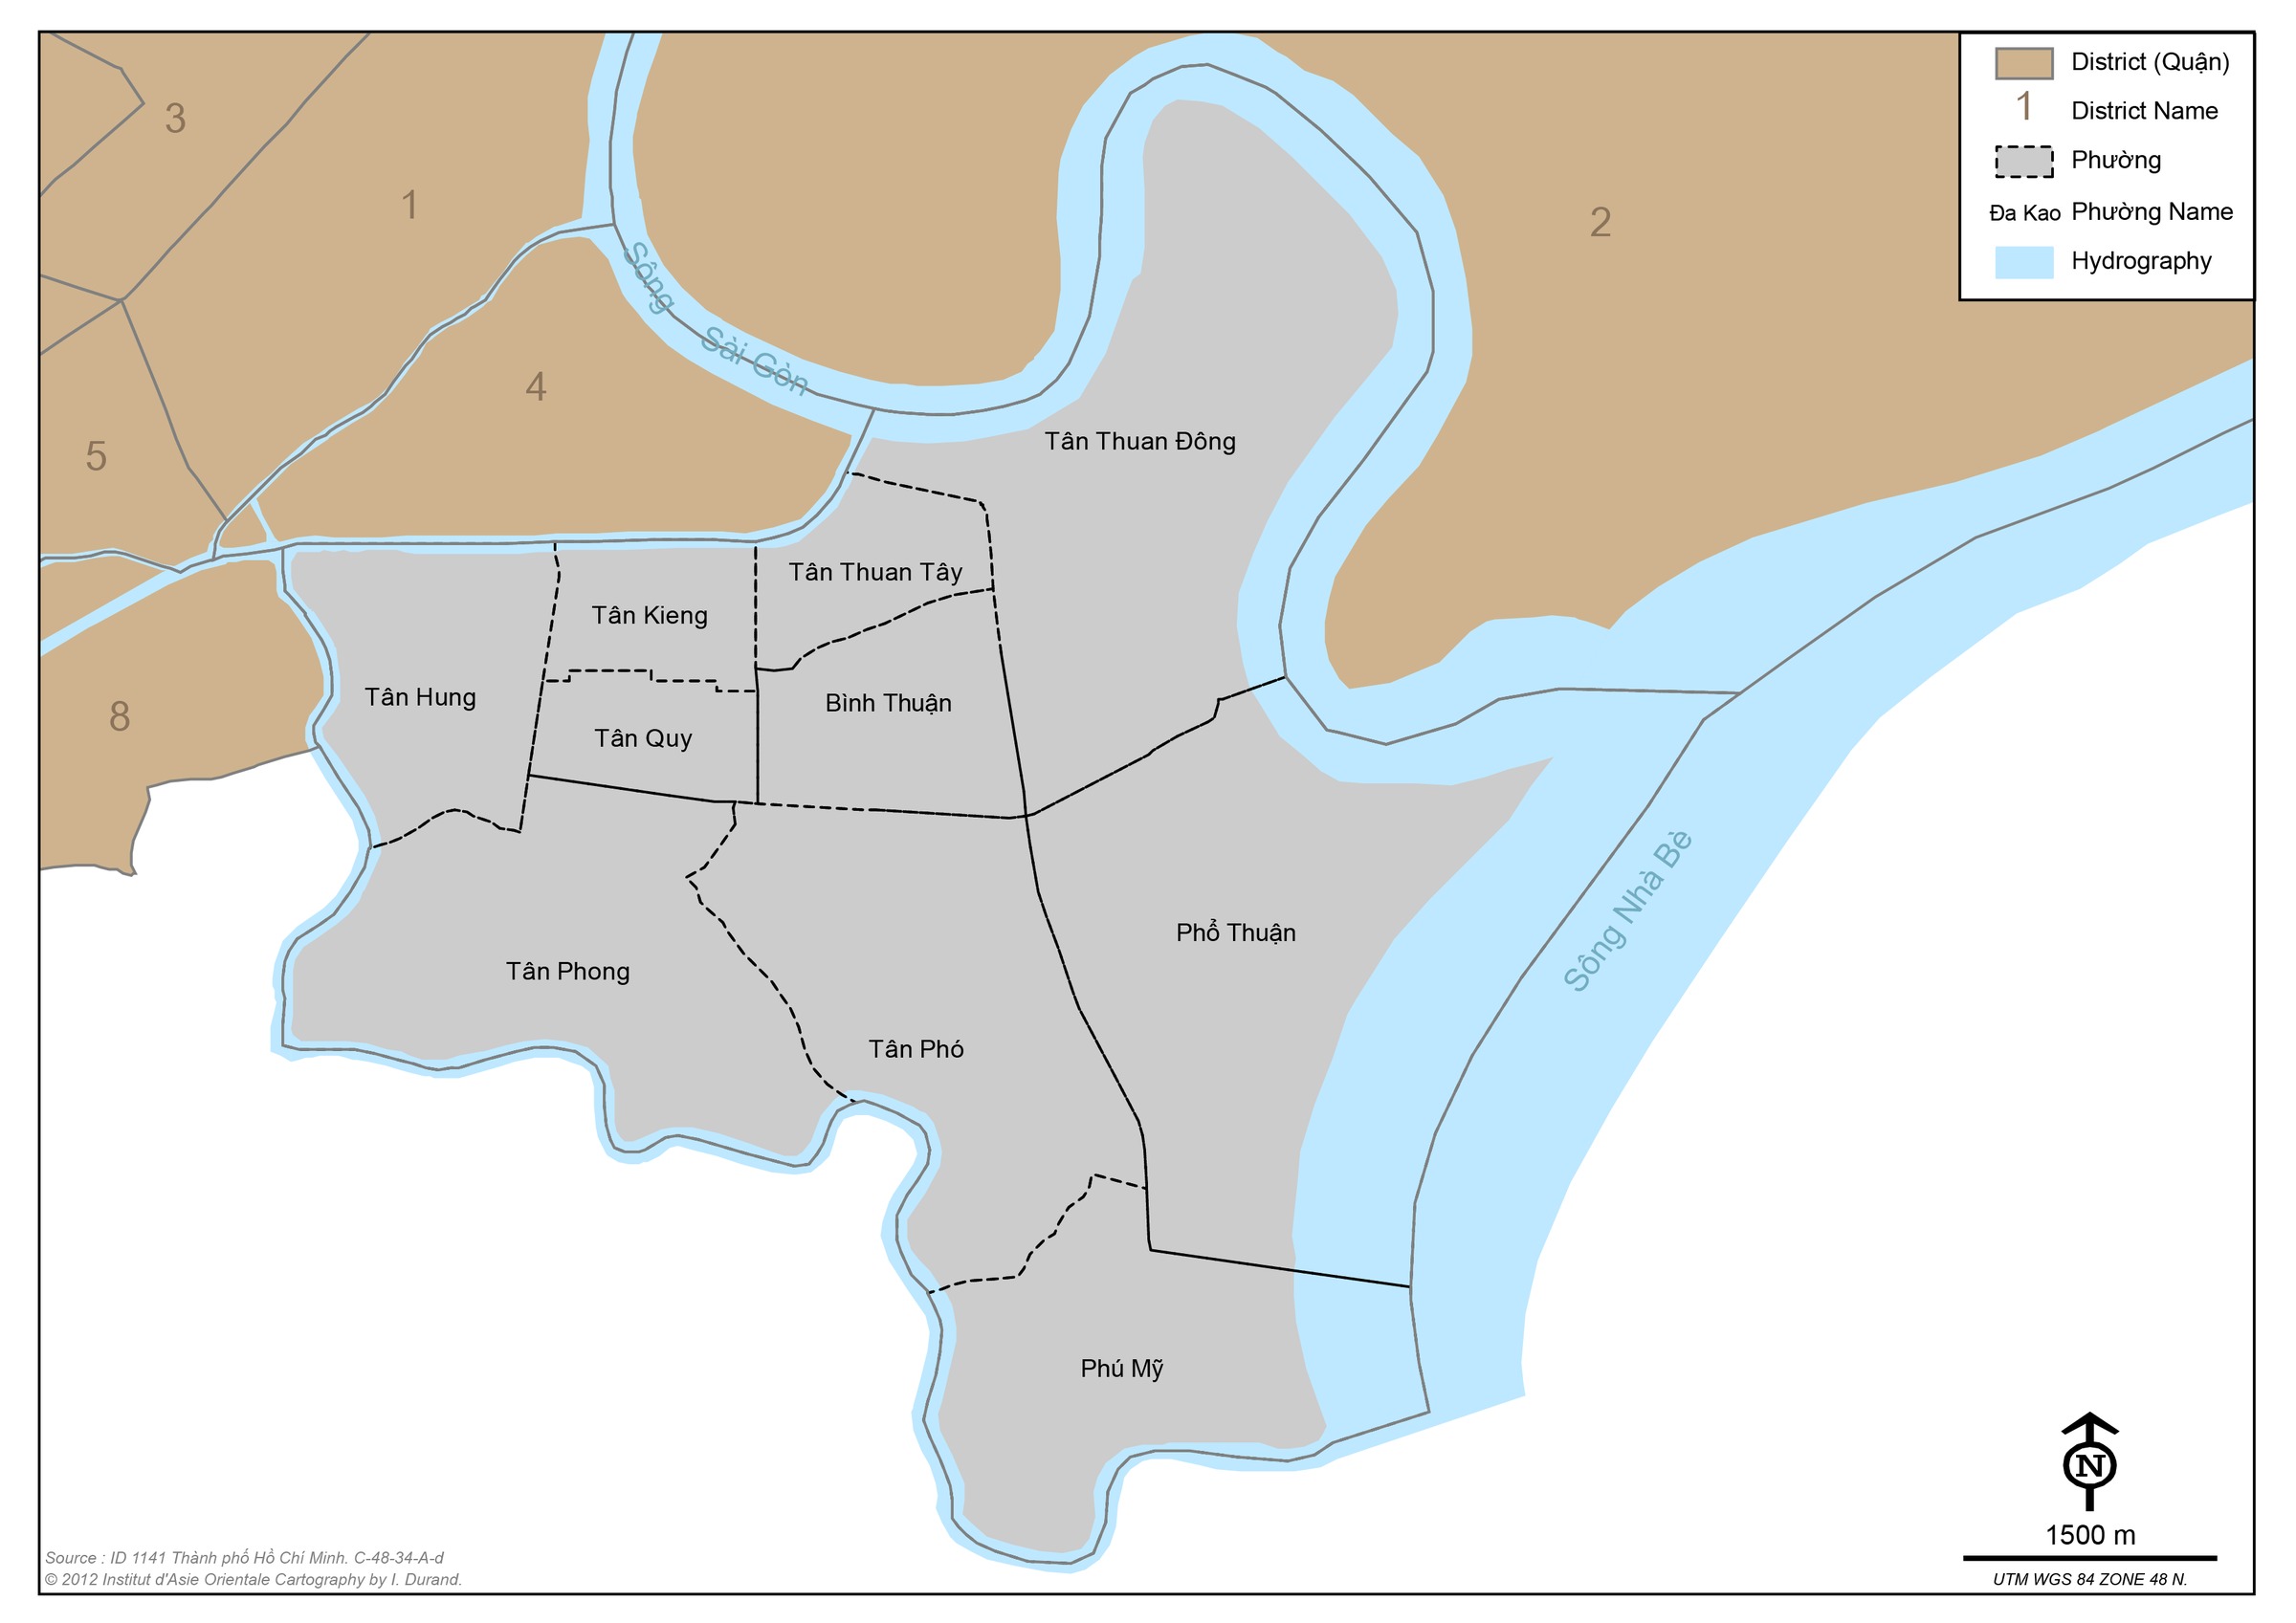 Quận 7 được biết đến là khu vực phát triển nhanh chóng với nhiều phường có tiềm năng lớn như Tân Quy, Tân Phú, Tân Thuận Đông,... Hãy xem bản đồ các phường quận 7 để nắm rõ hơn về địa lý và diện tích từng phường.